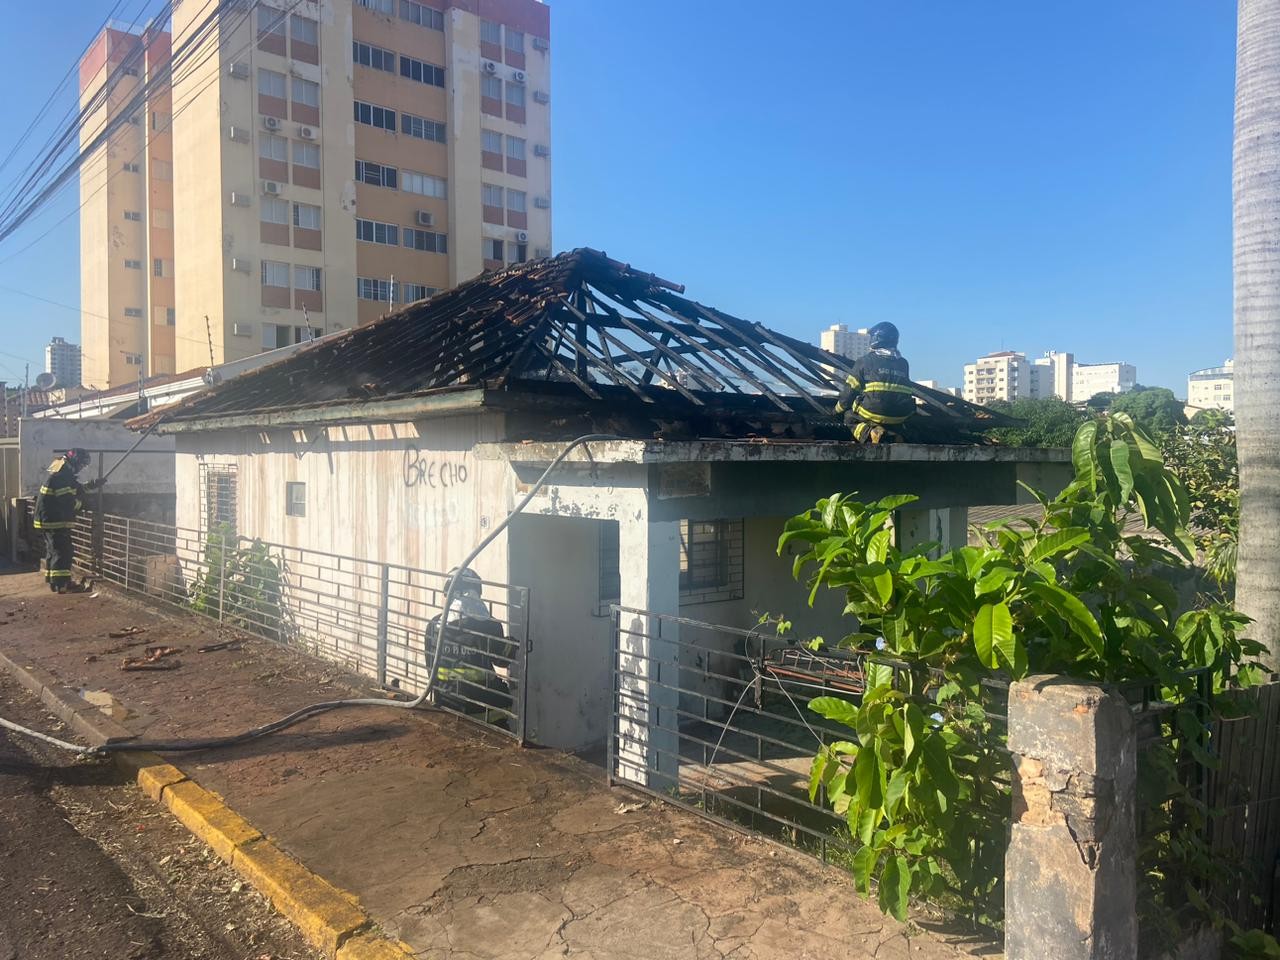 Incêndio atinge telhado de madeira de residência na Vila Ocidental, em Presidente Prudente